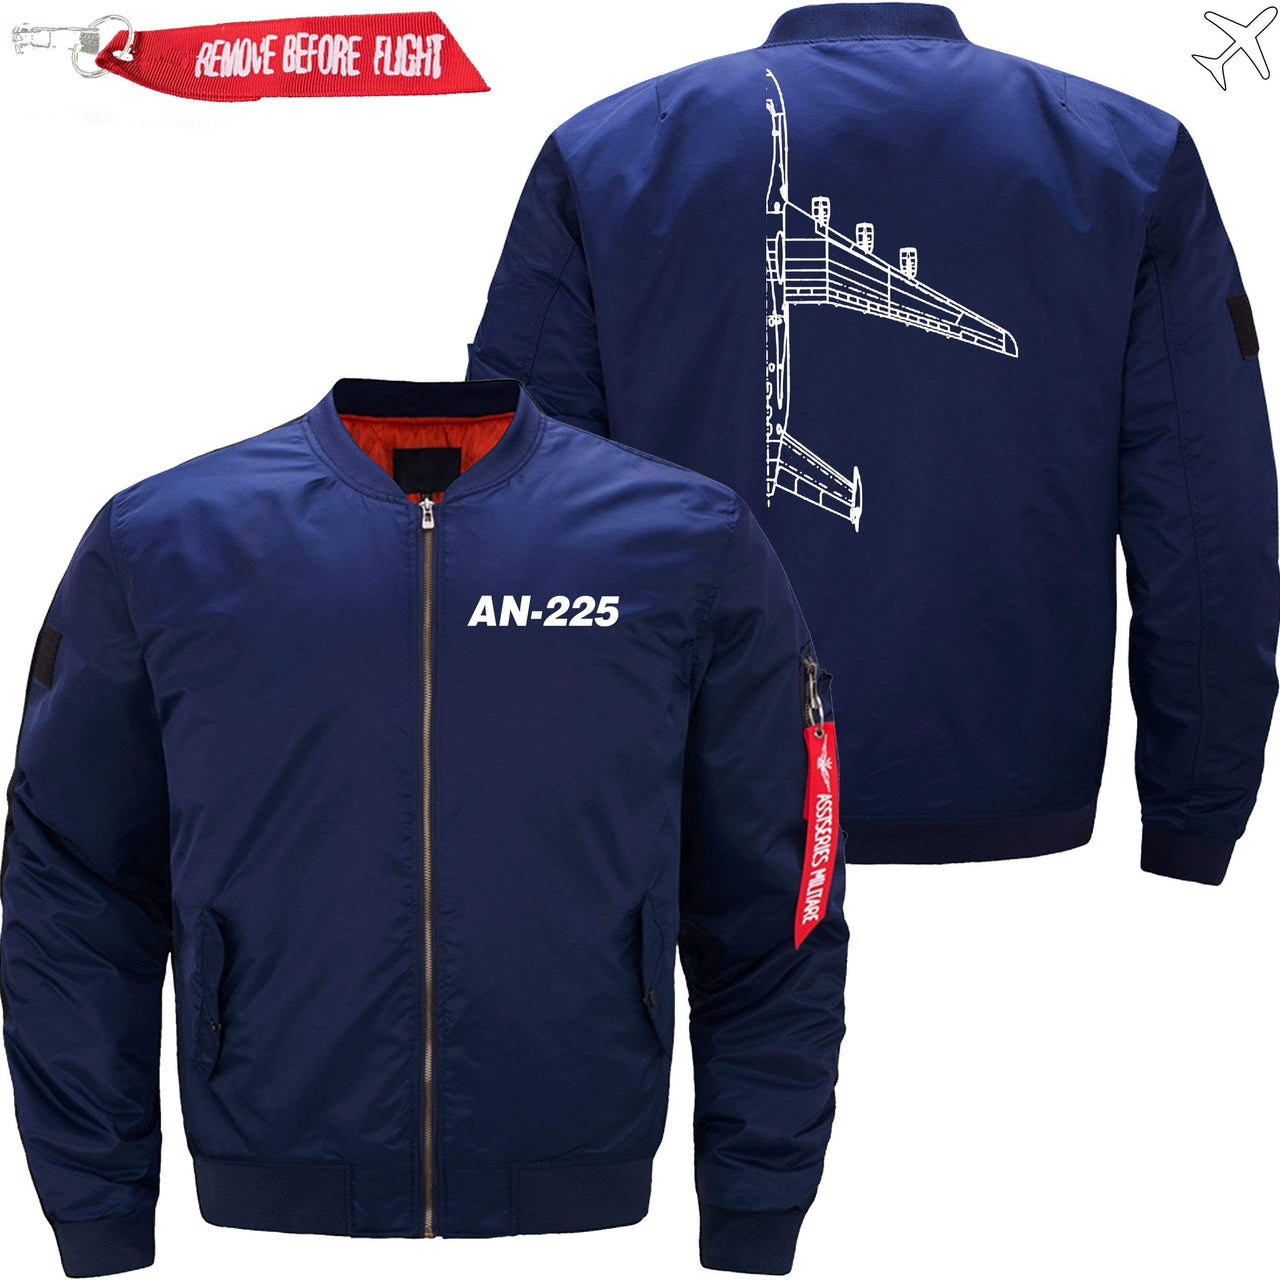 ANTONOV AN-225 CROSS SECTION - JACKET THE AV8R